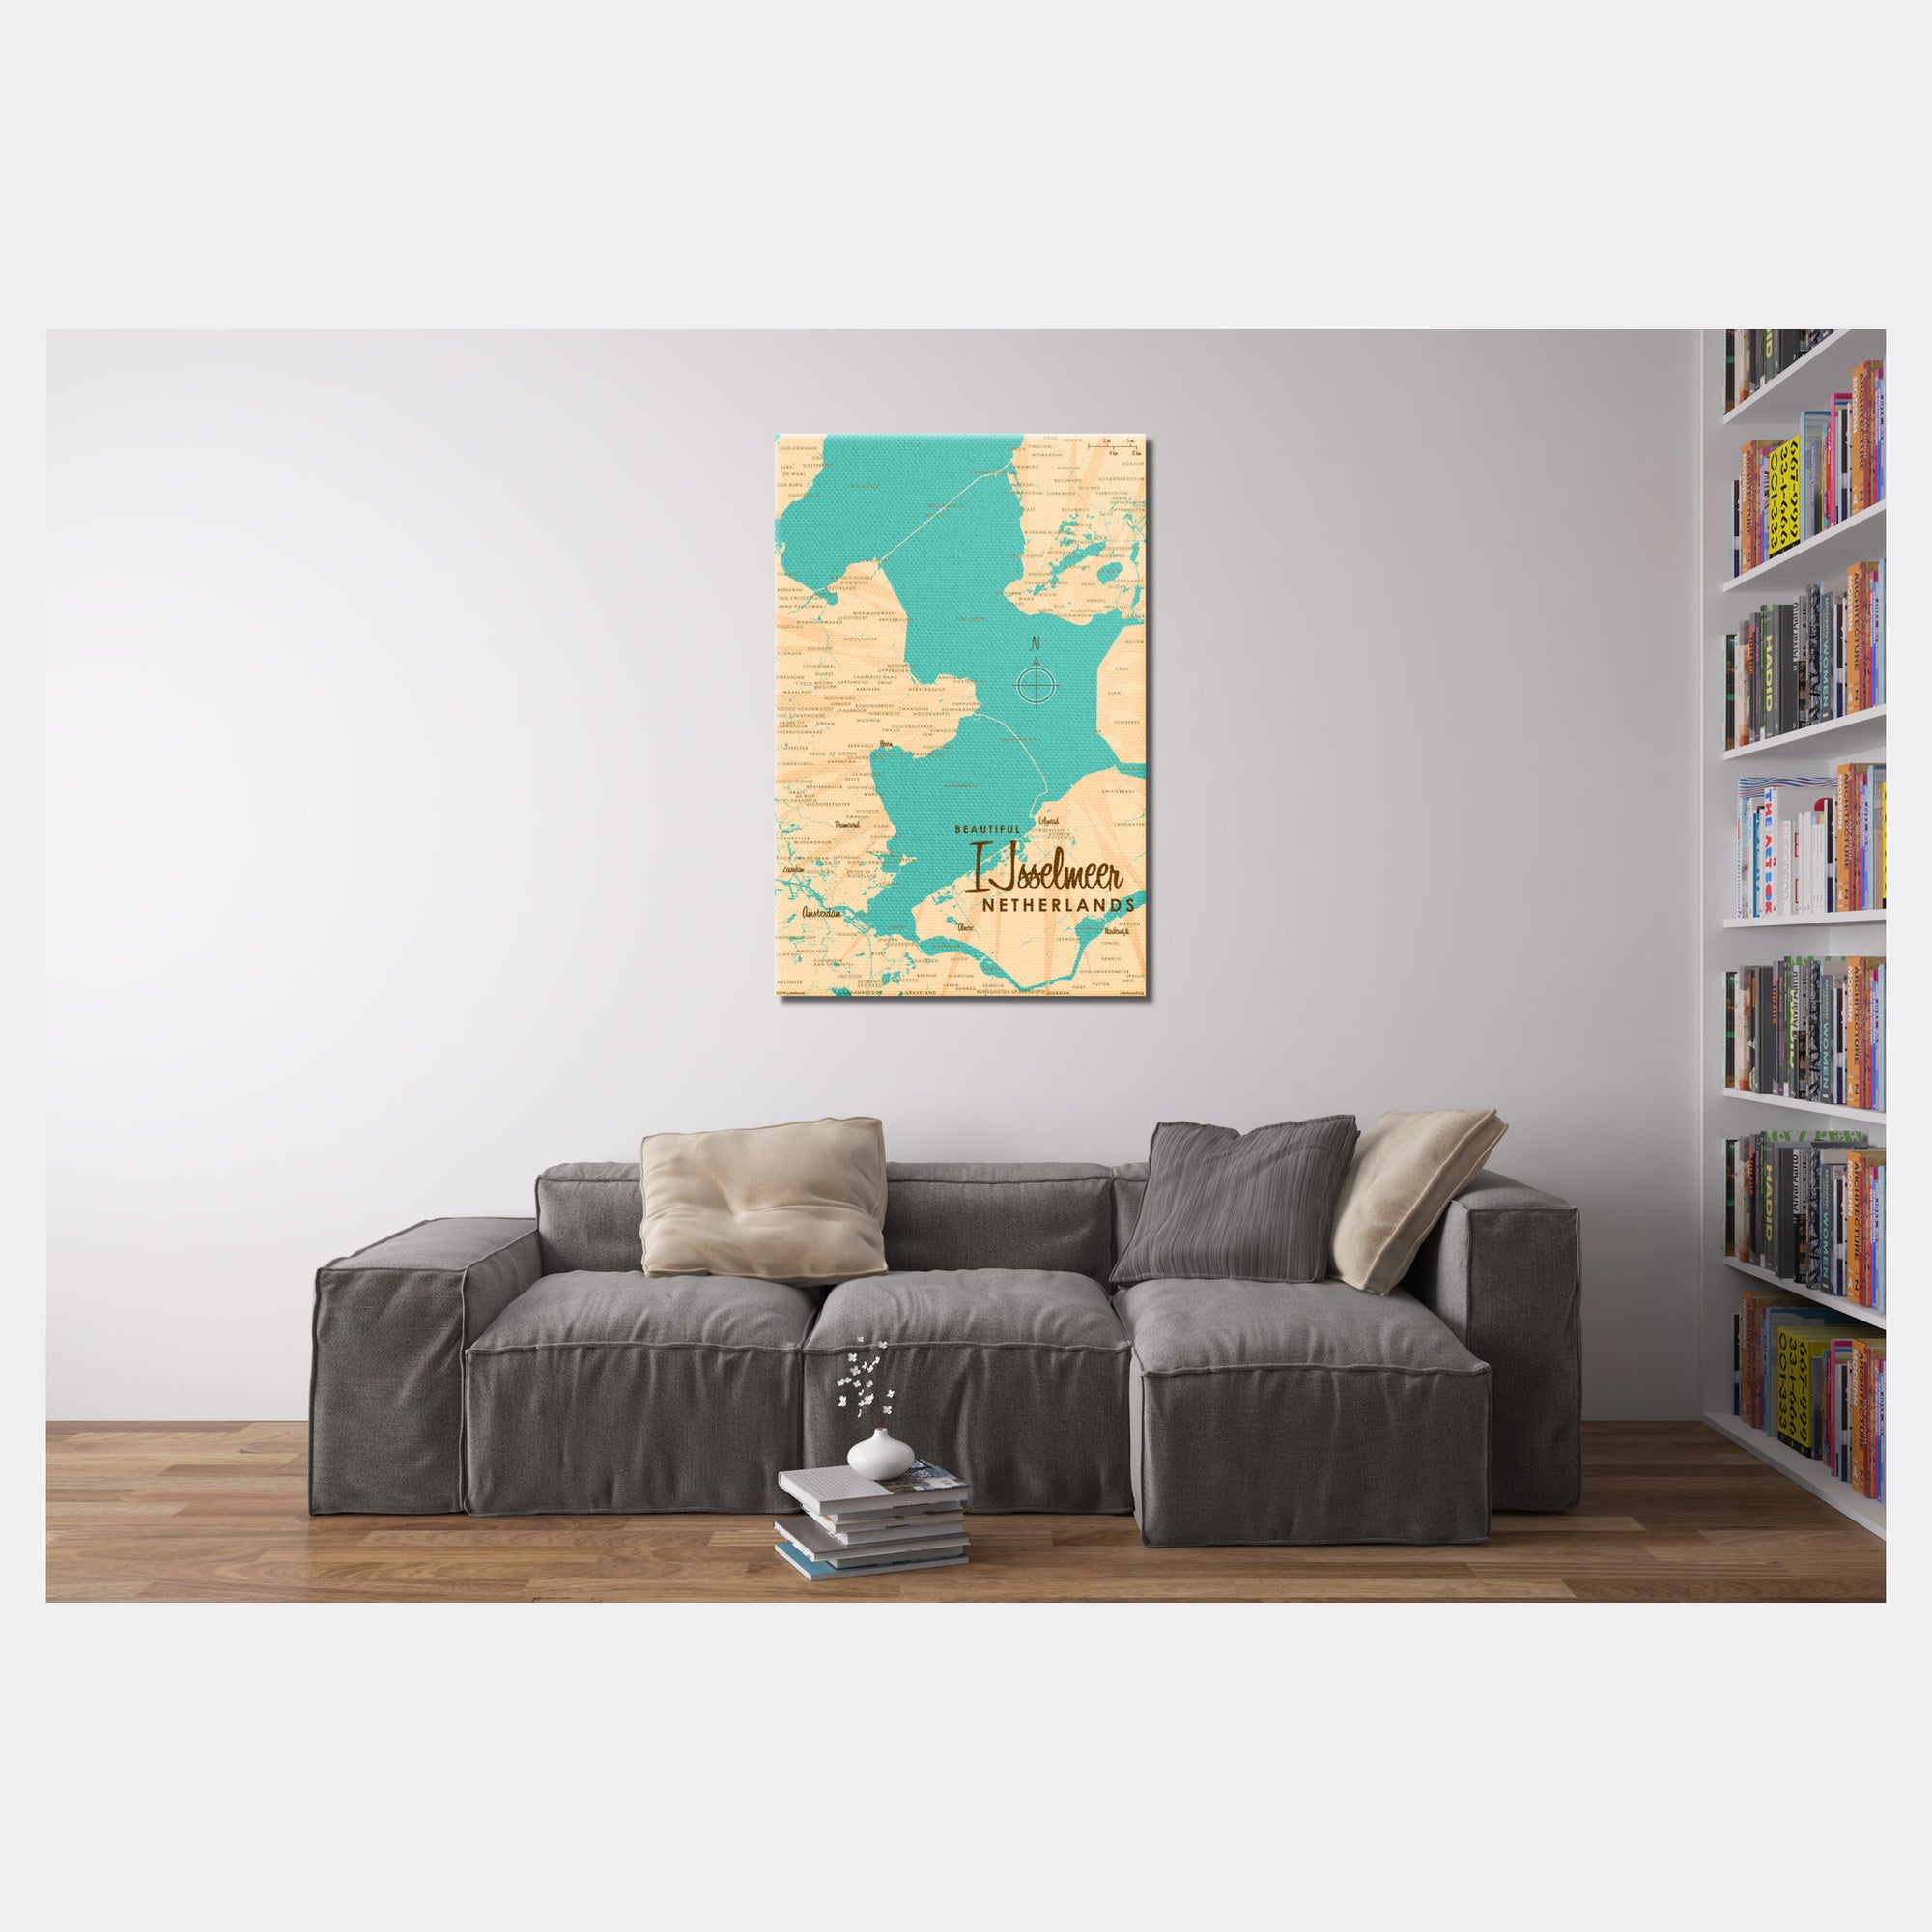 IJsselmeer Netherlands, Canvas Print